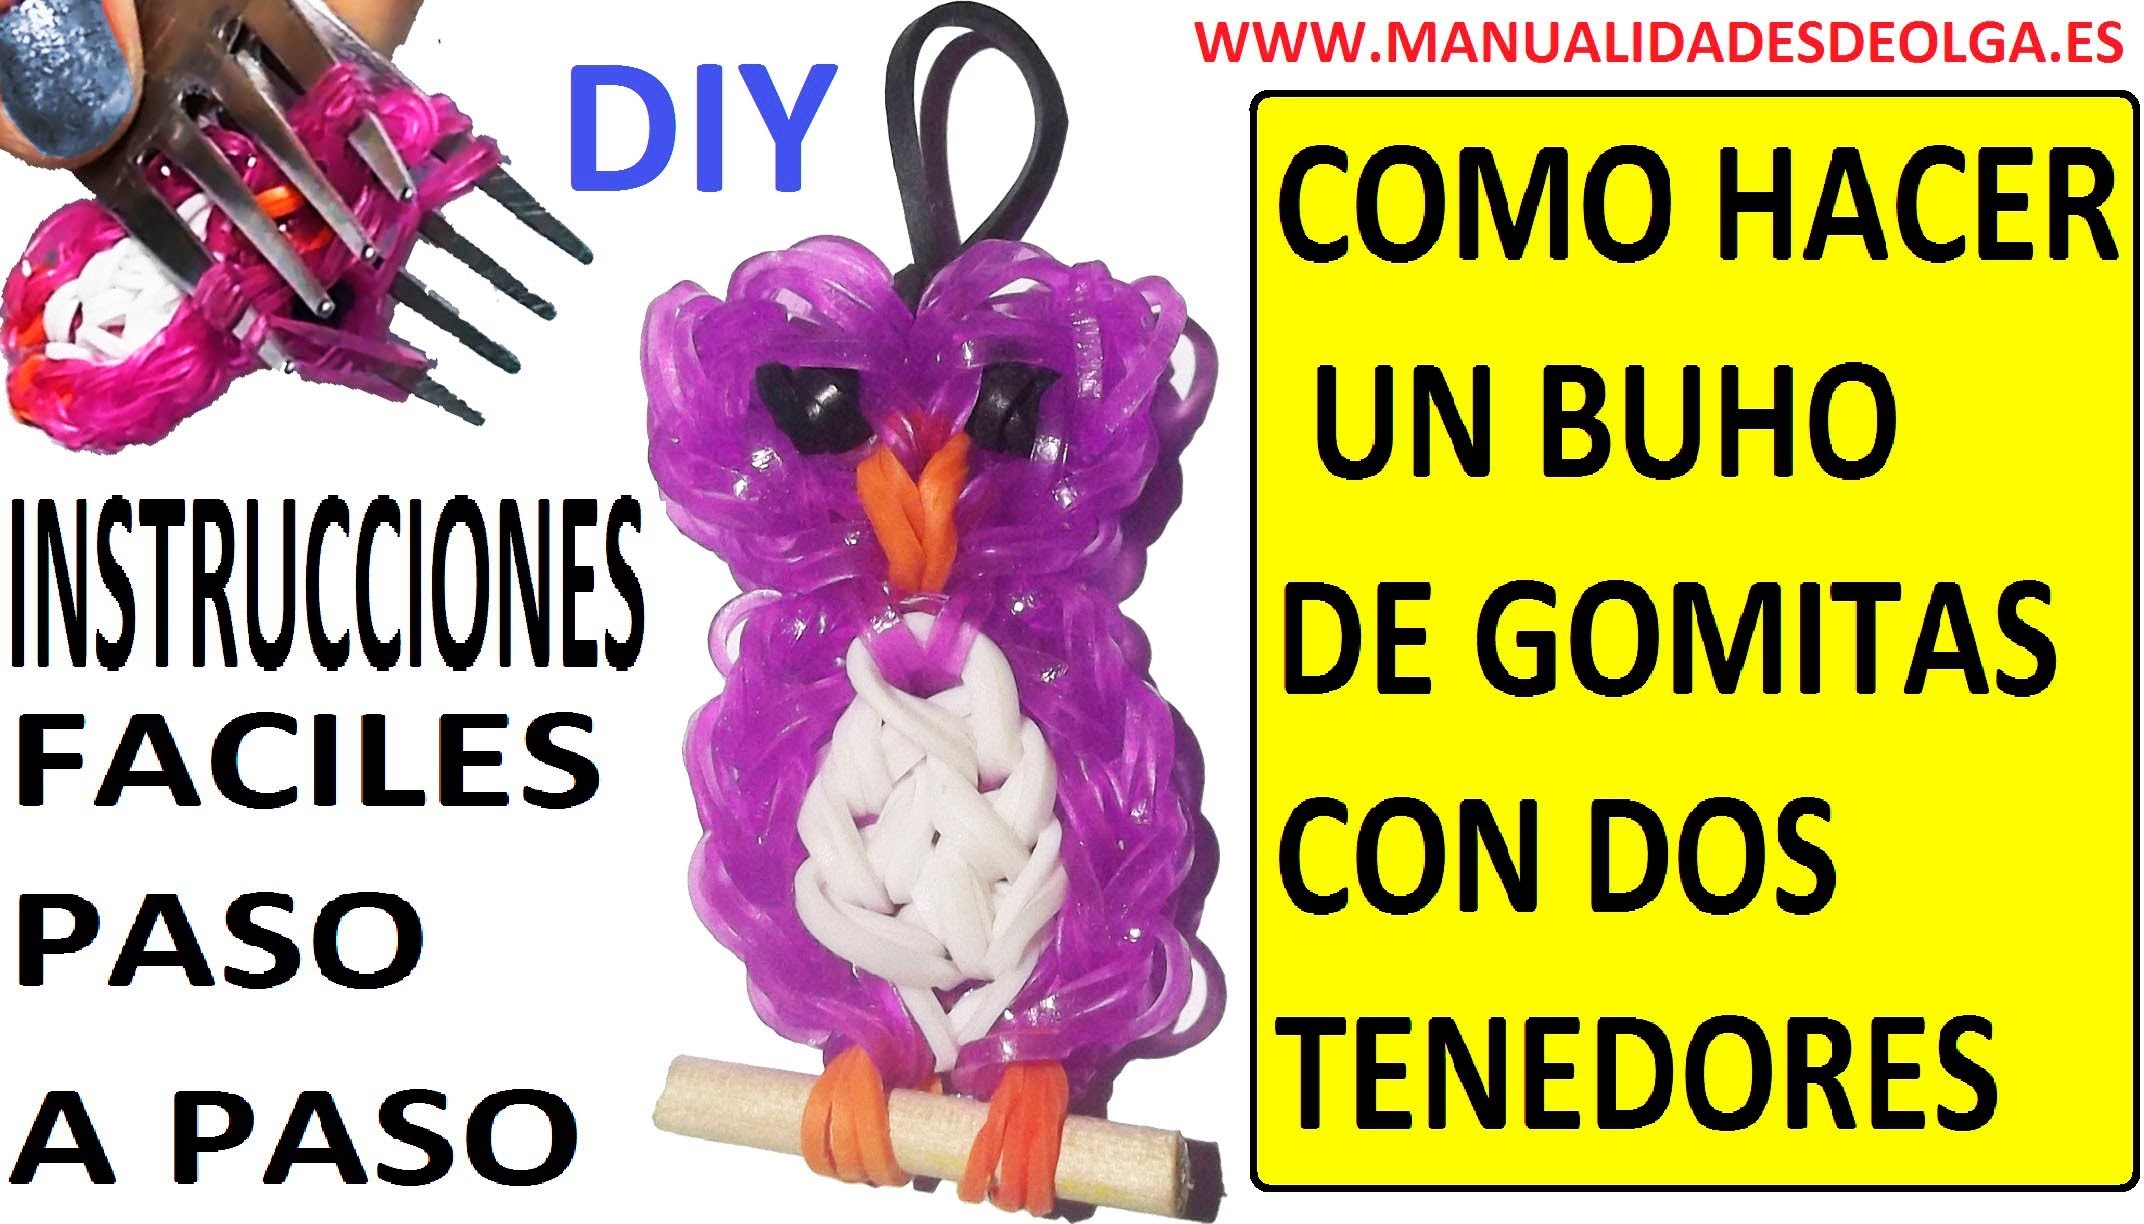 COMO HACER UN BUHO DE GOMITAS (LIGAS) (OWL CHARMS) CON DOS TENEDORES. TUTORIAL DIY